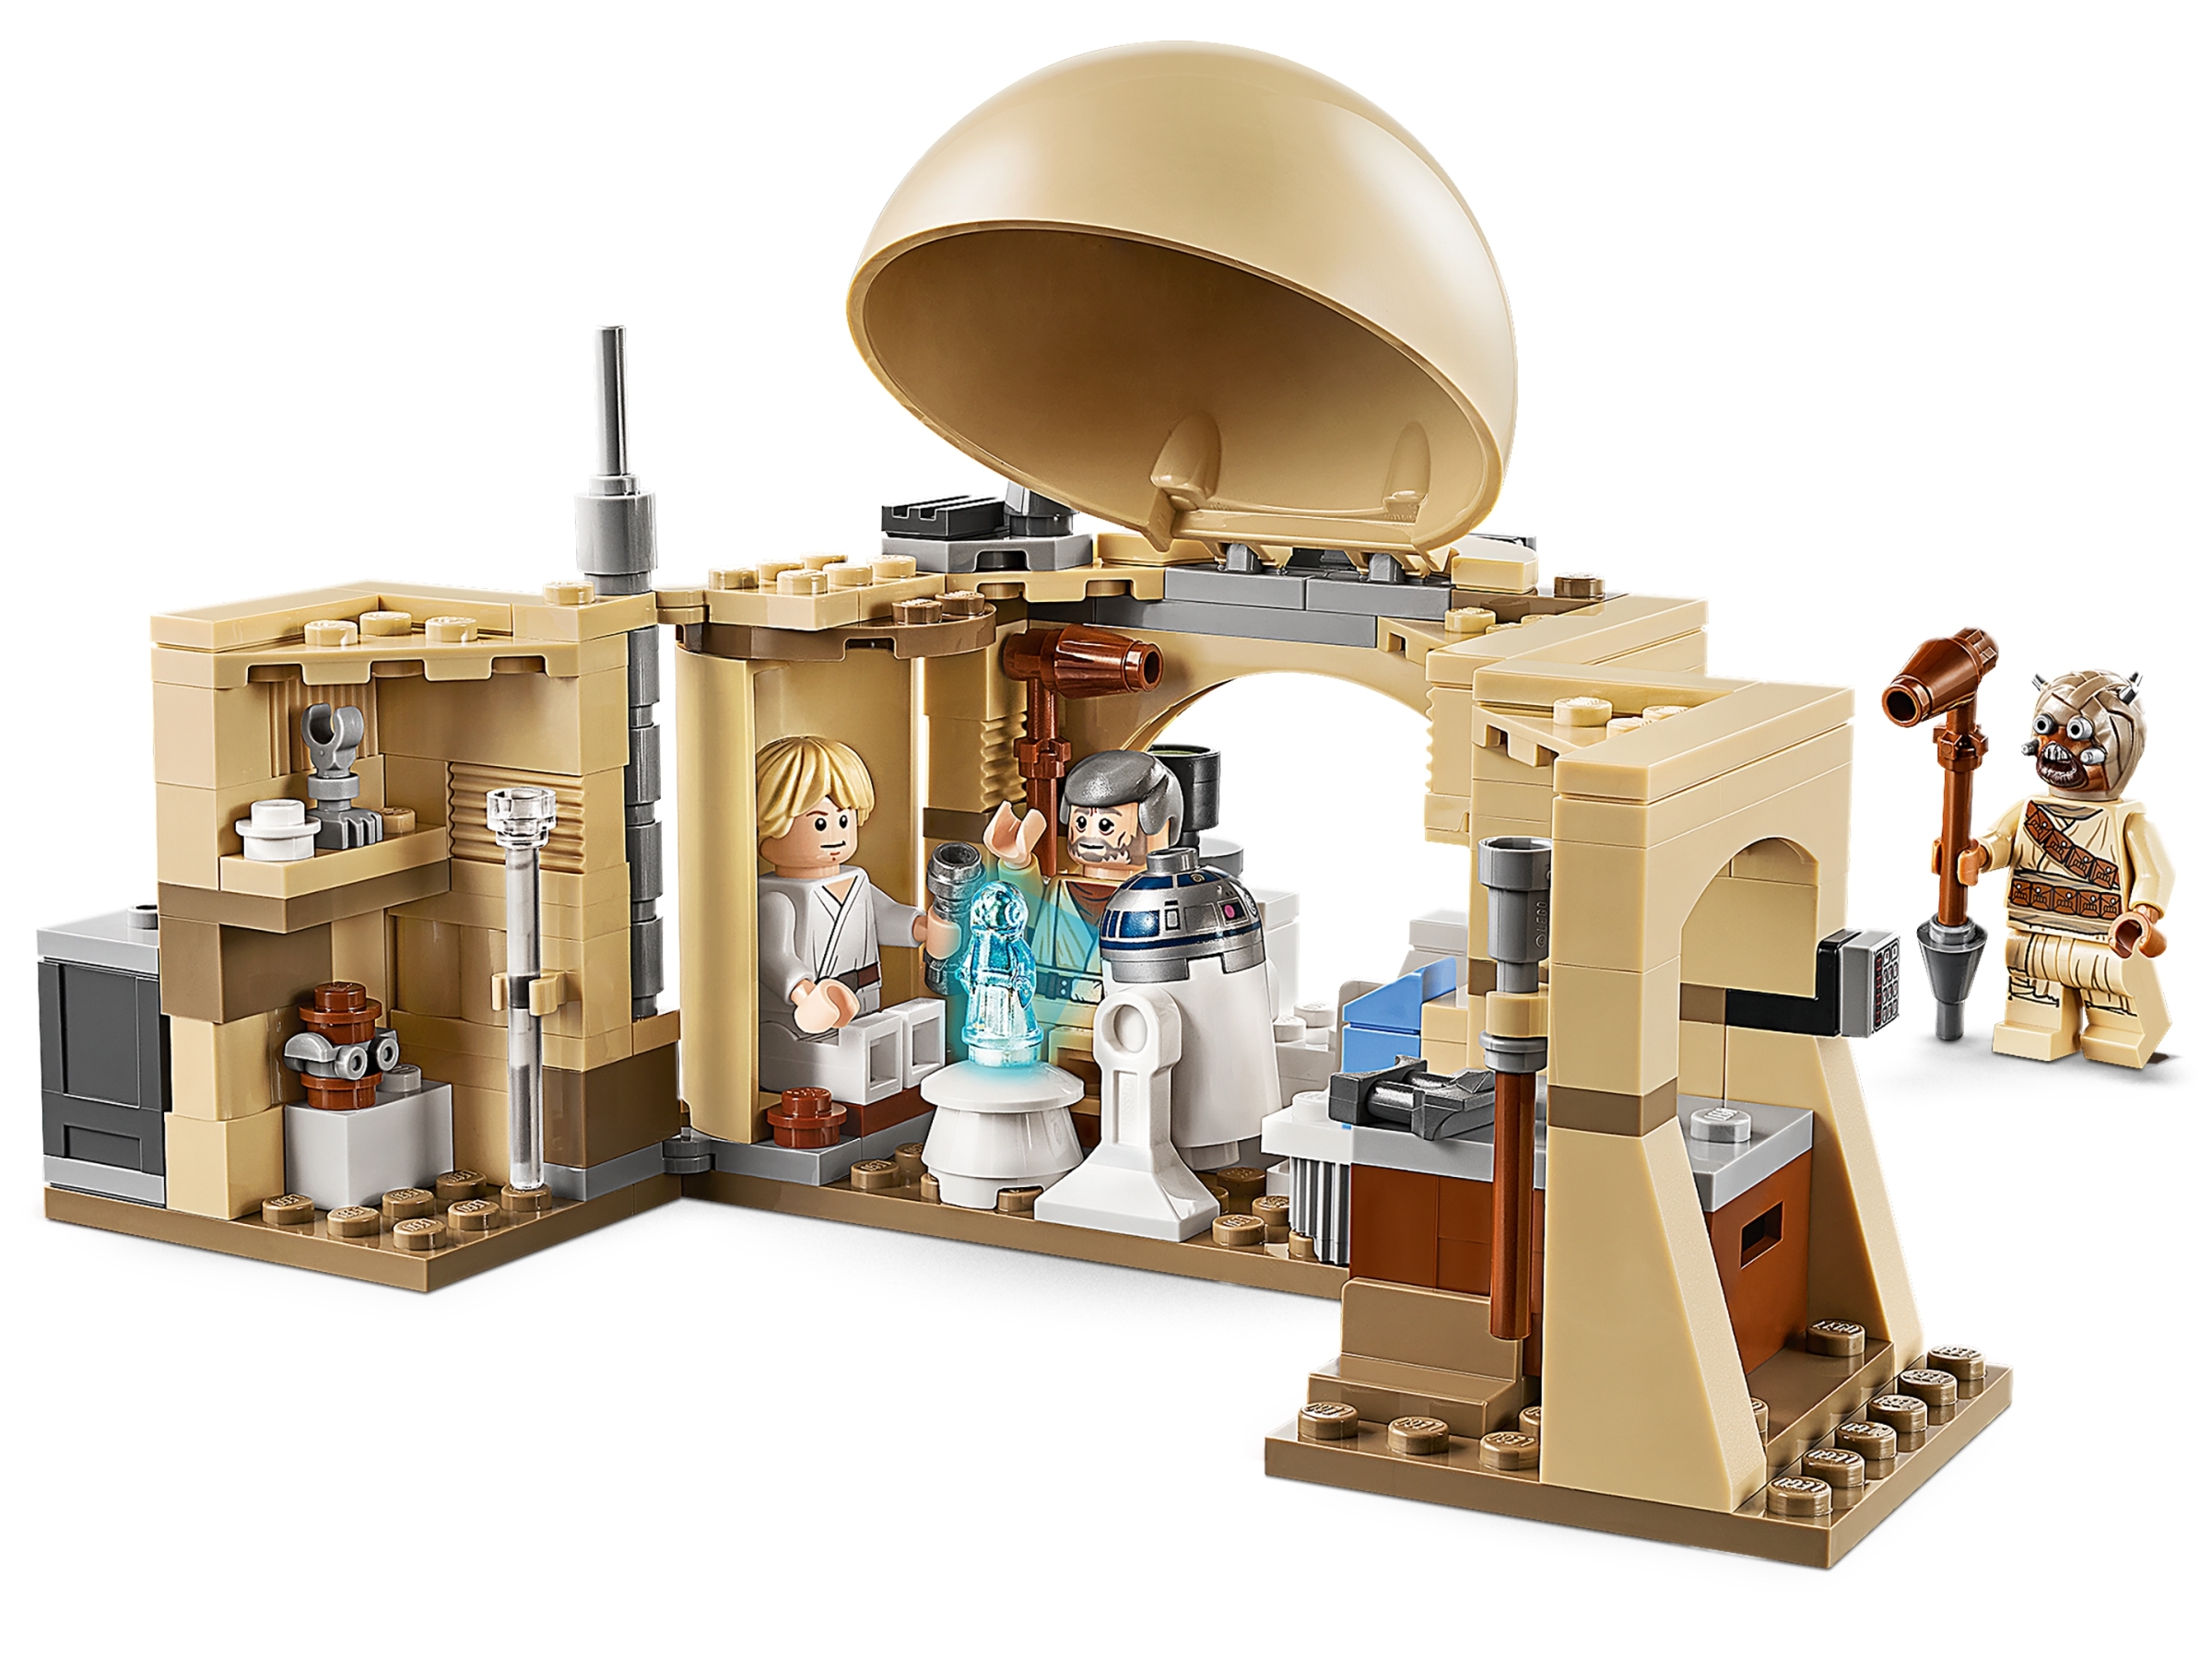 LEGO Obi-Wan's Hut Star Wars TM 75270 